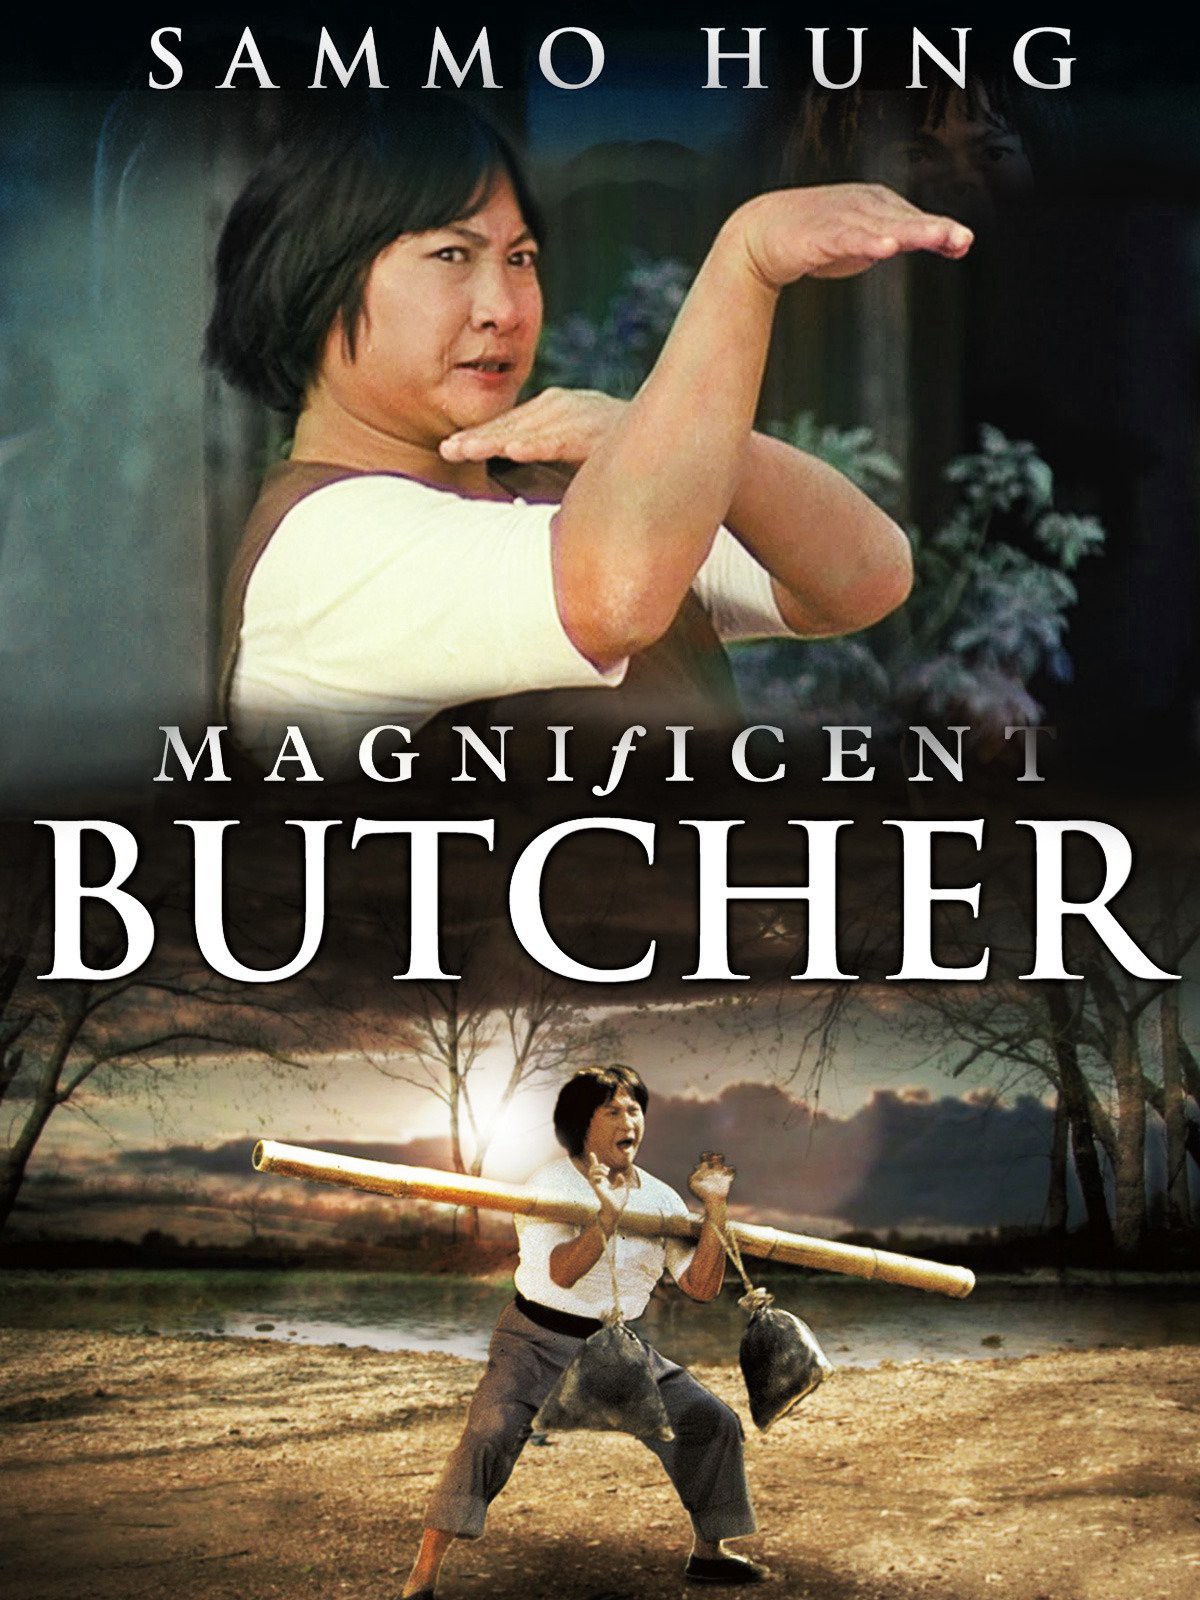 Lâm Thế Vinh - Magnificent Butcher (1979)